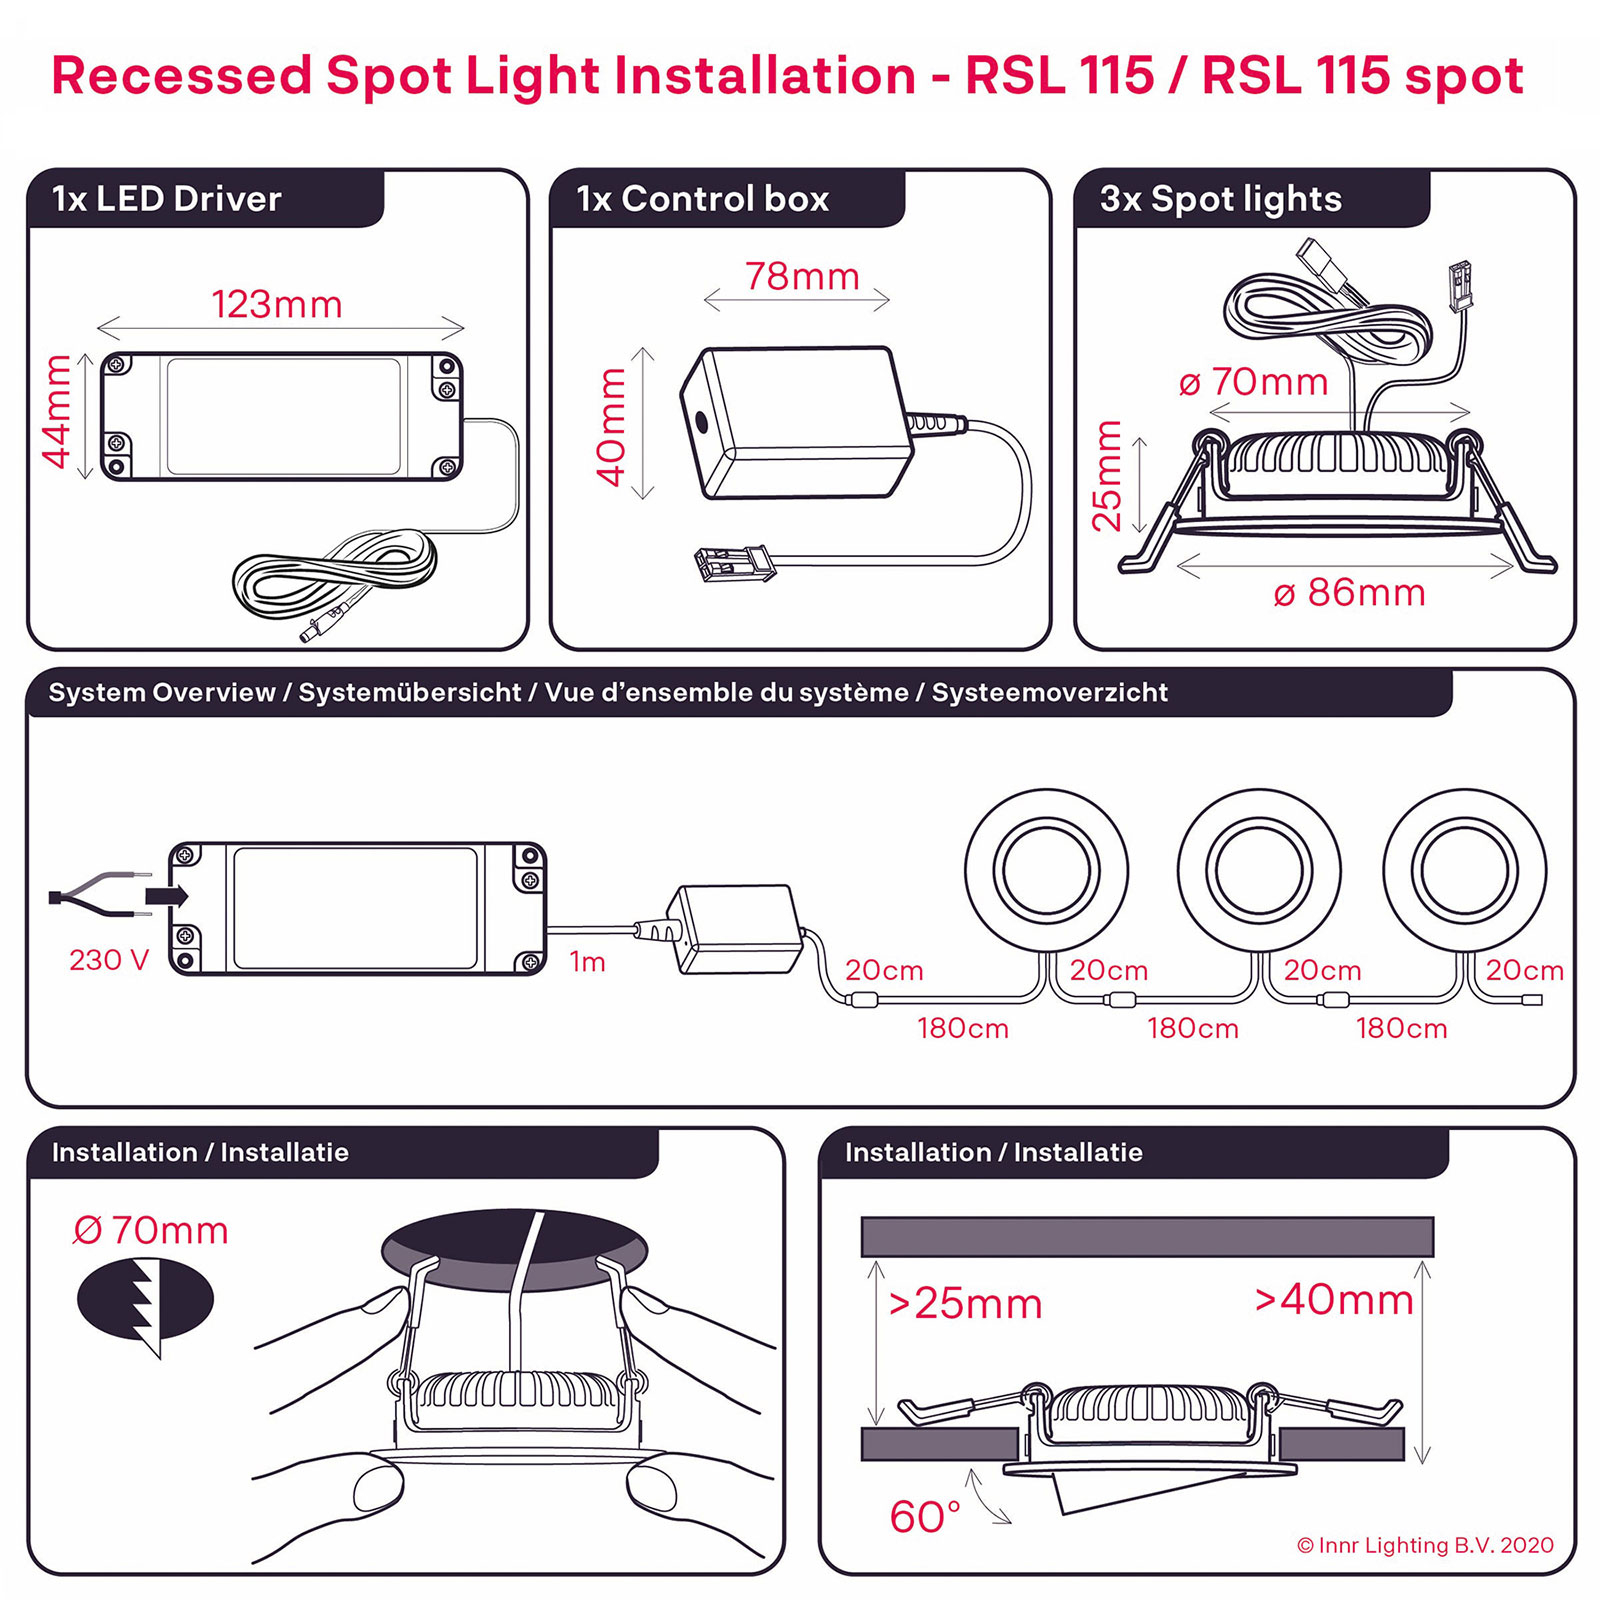 Innr spot encastrable LED RSL 115, lot 3